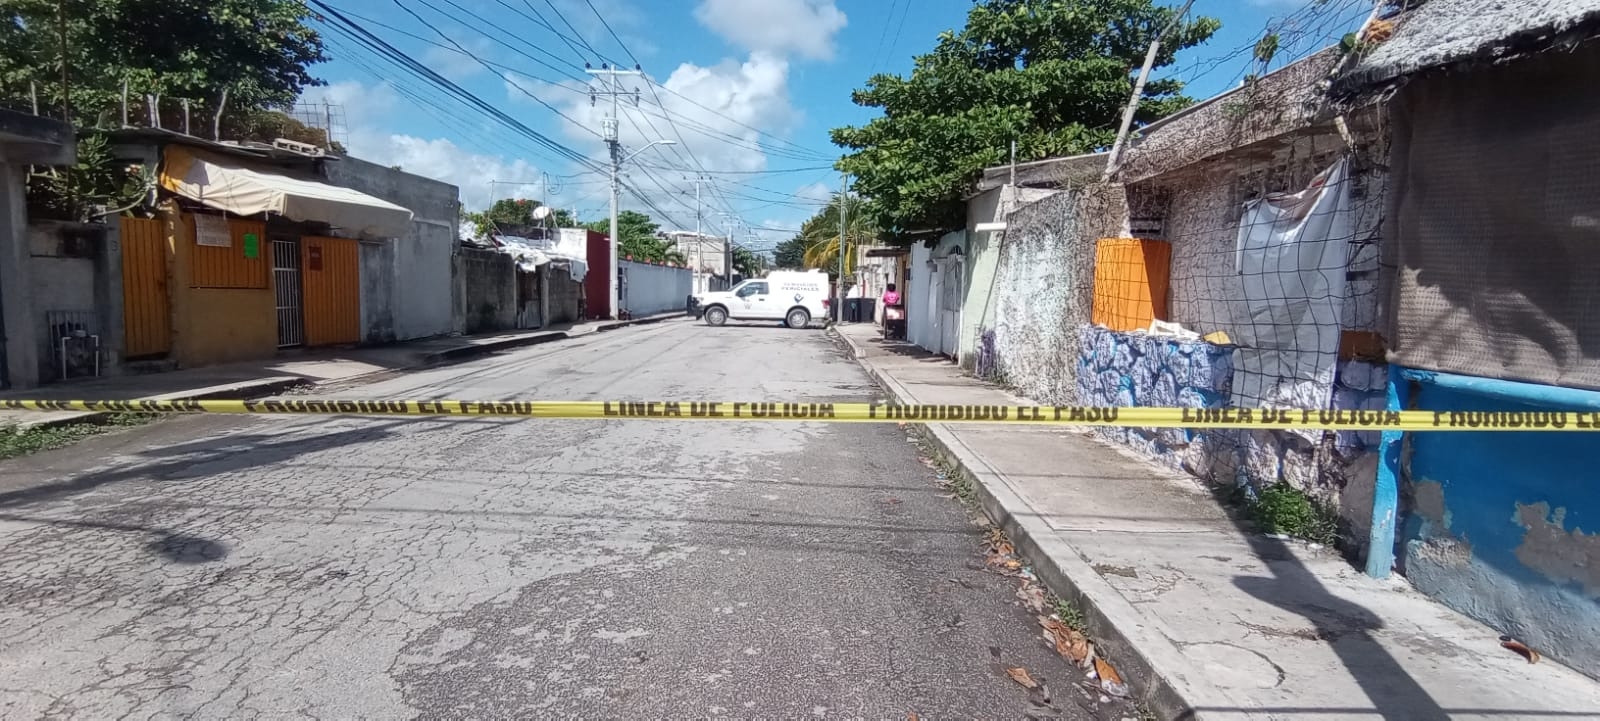 Ejecutan a balazos a una joven en la Región 75 en Cancún